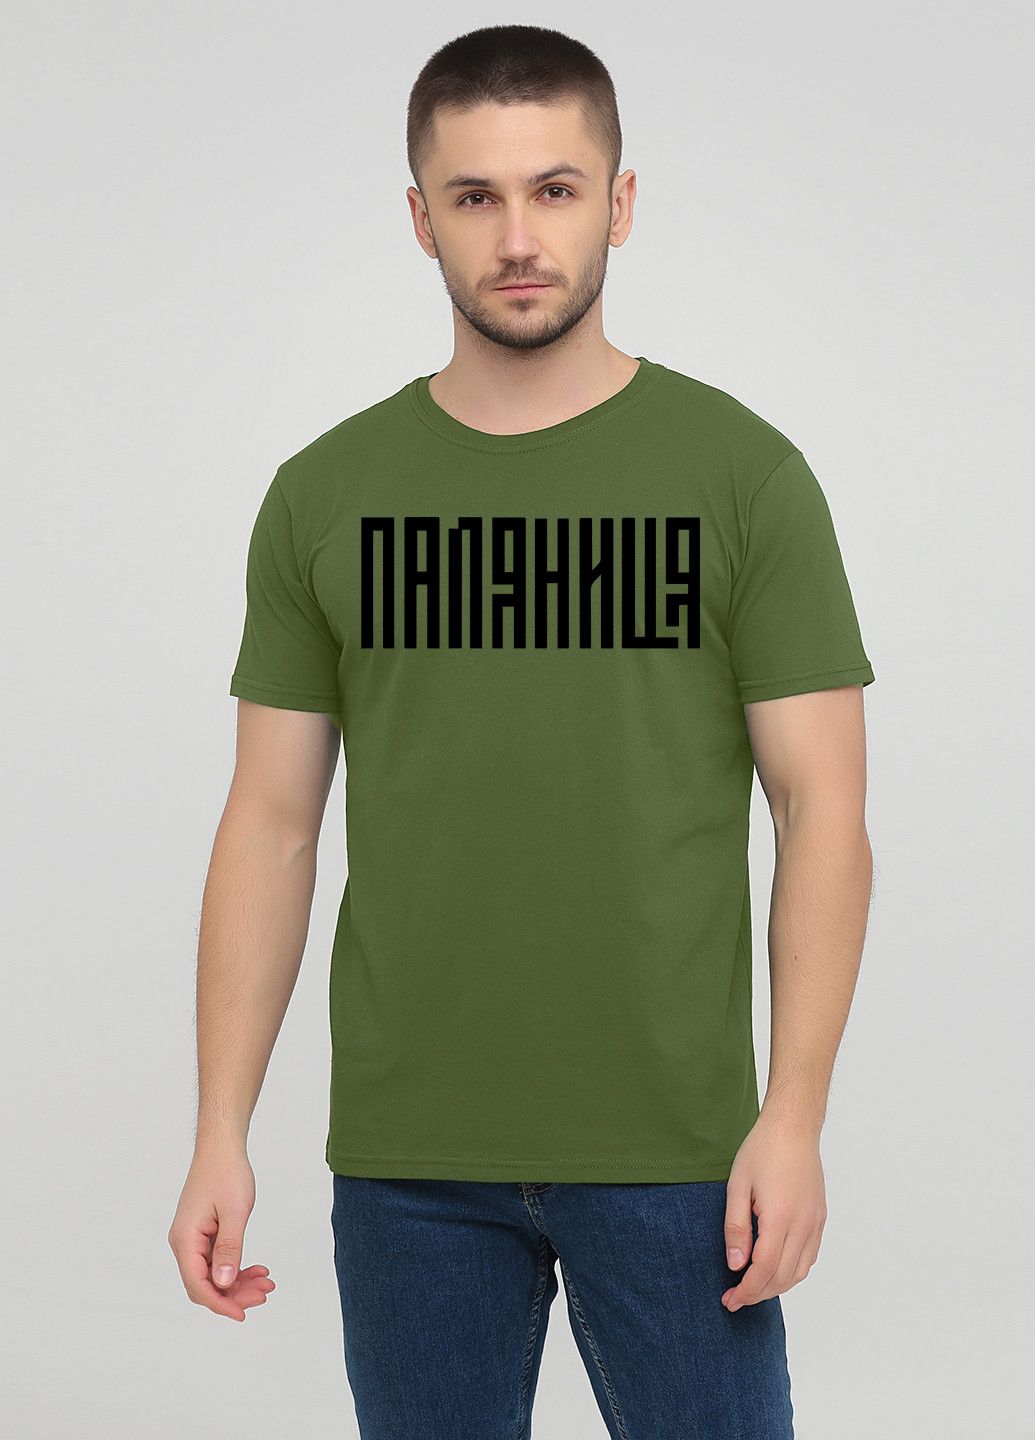 Оливкова футболка чоловіча м385-24 оливкова Malta